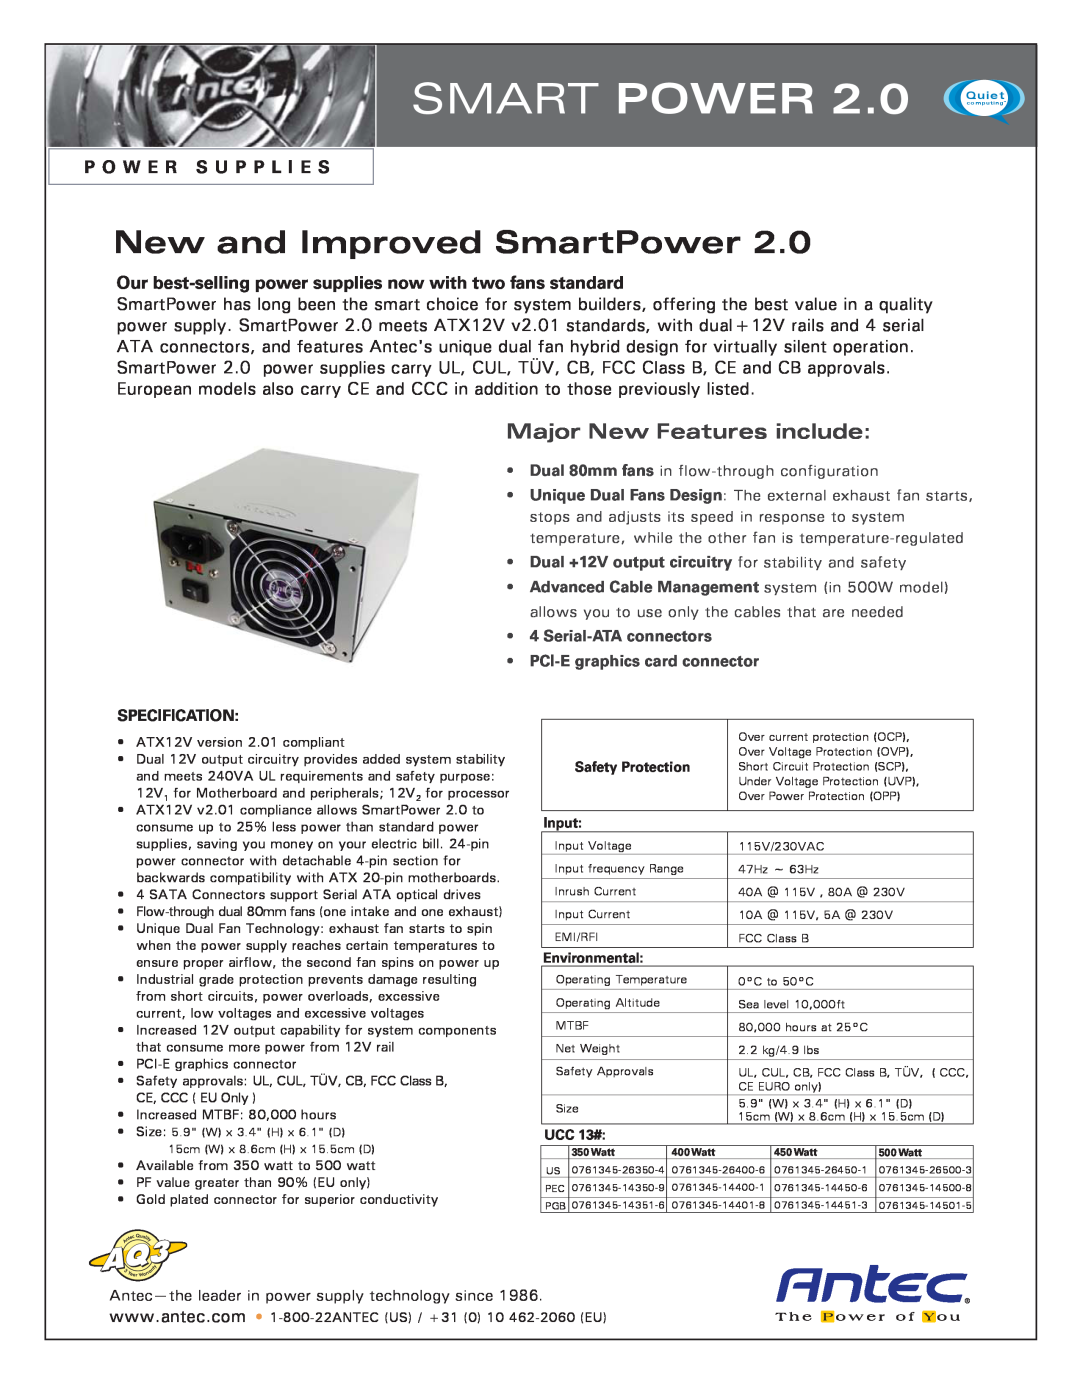 Antec 4 Serial-ATA manual Smart Power, New and Improved SmartPower, Major New Features include, P O W E R S U P P L I E S 